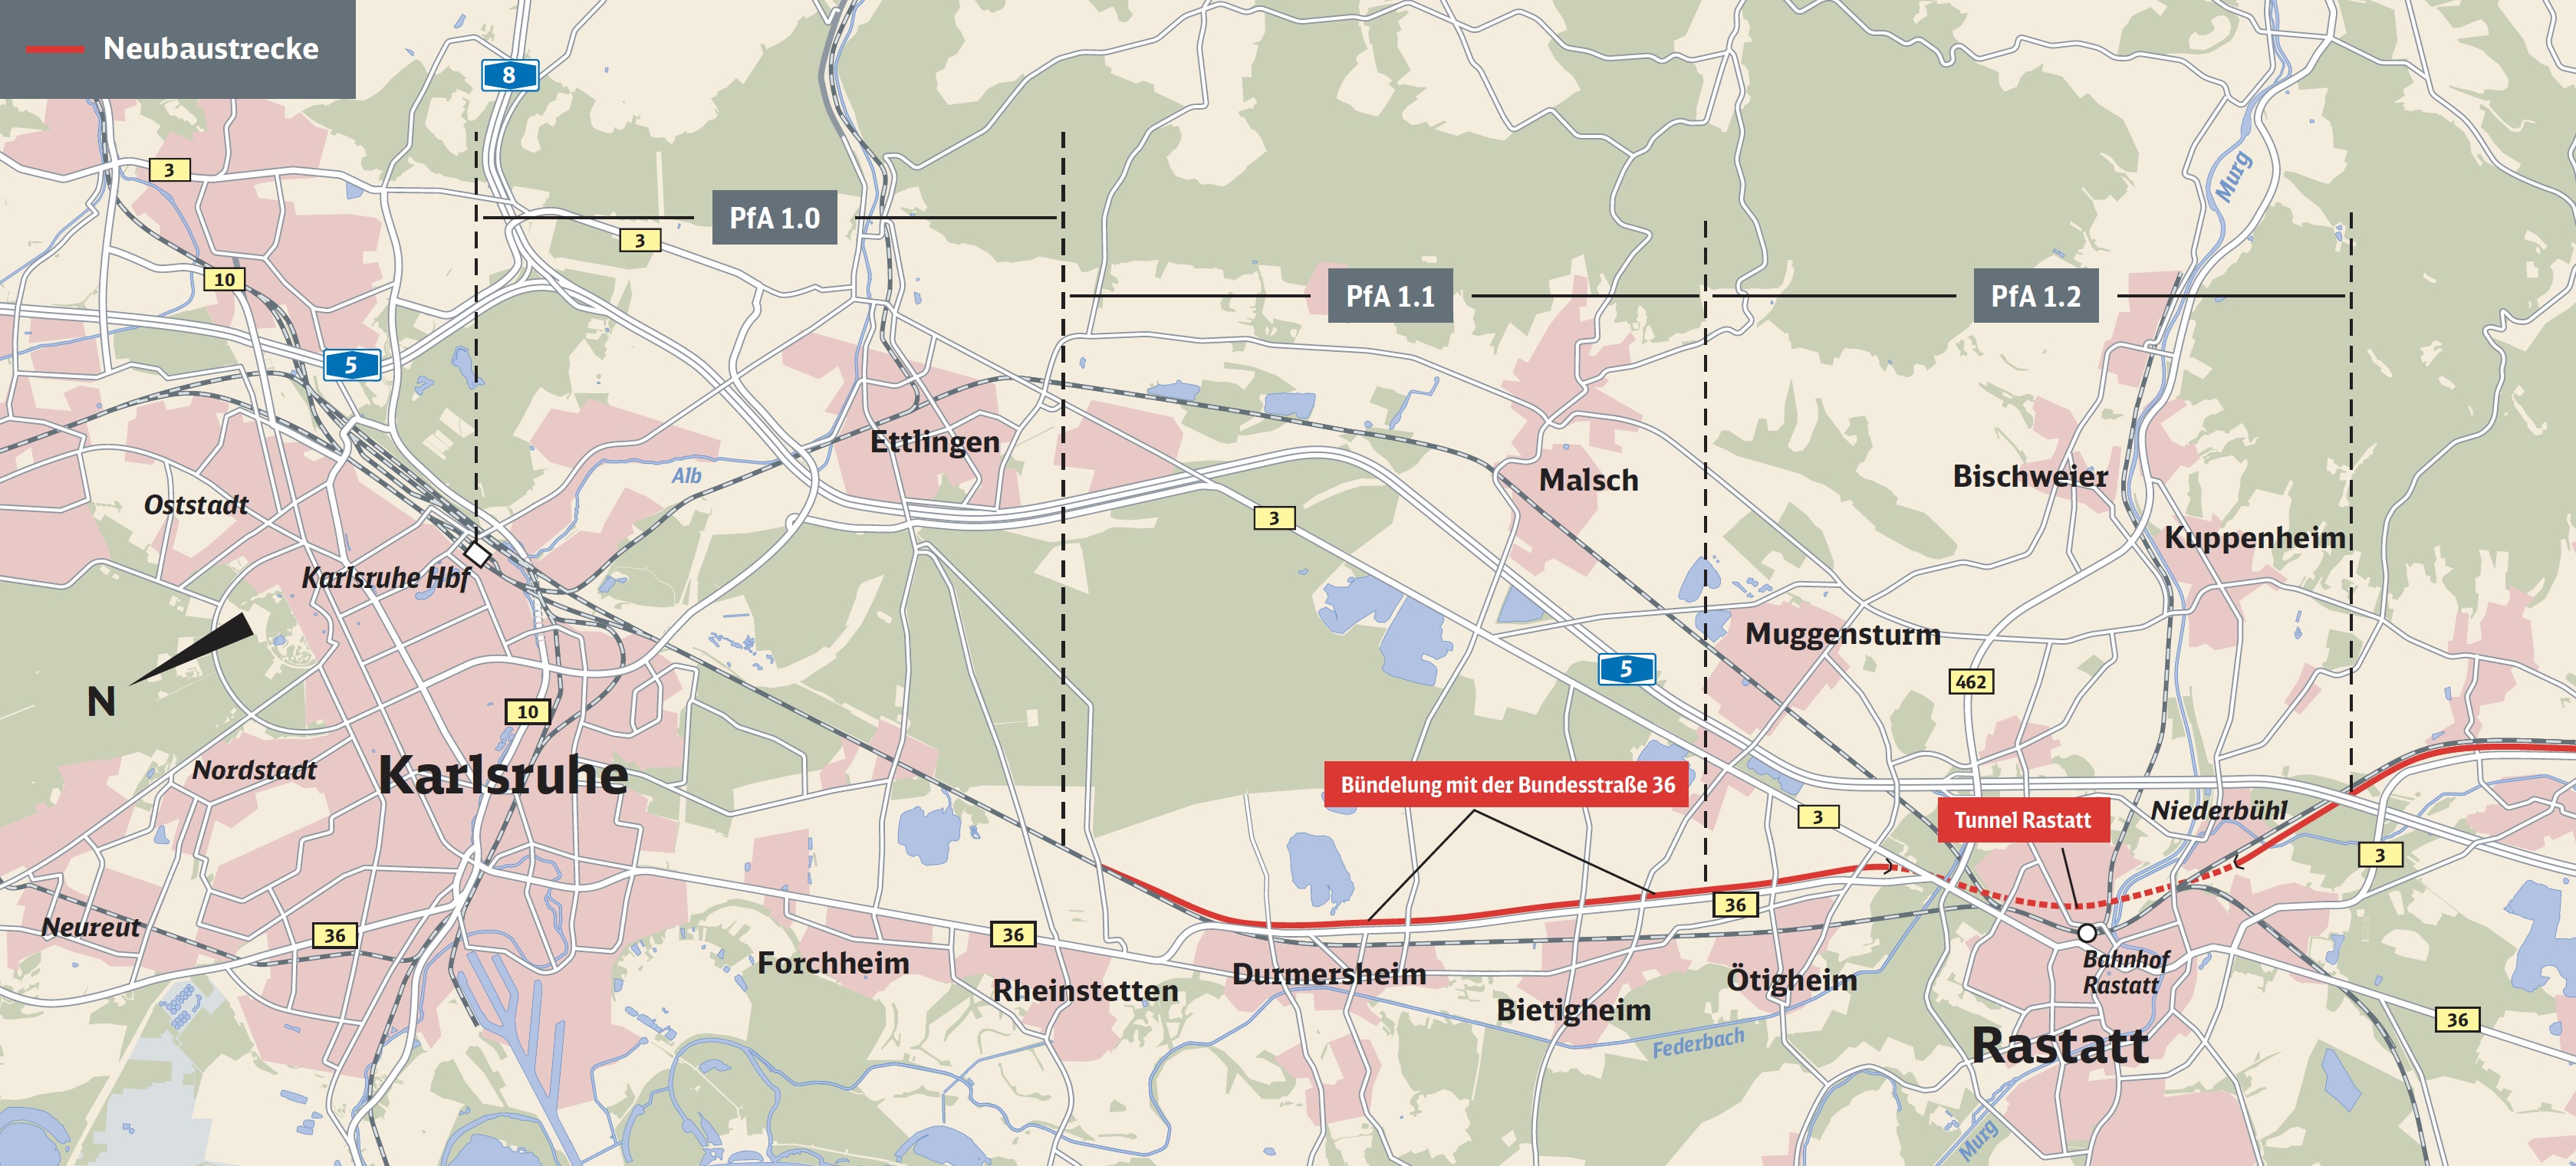 Karte zeigt den Streckenverlauf des Streckenabschnitts 1 von Karlsruhe bis Rastatt mit den Planfeststellungsabschnitten (PfA) 1.0, 1.1 und 1.2, Neubaustrecke in den PfA 1.1 und 1.2 in Rot. Im PfA 1.2 liegt der Tunnel Rastatt.